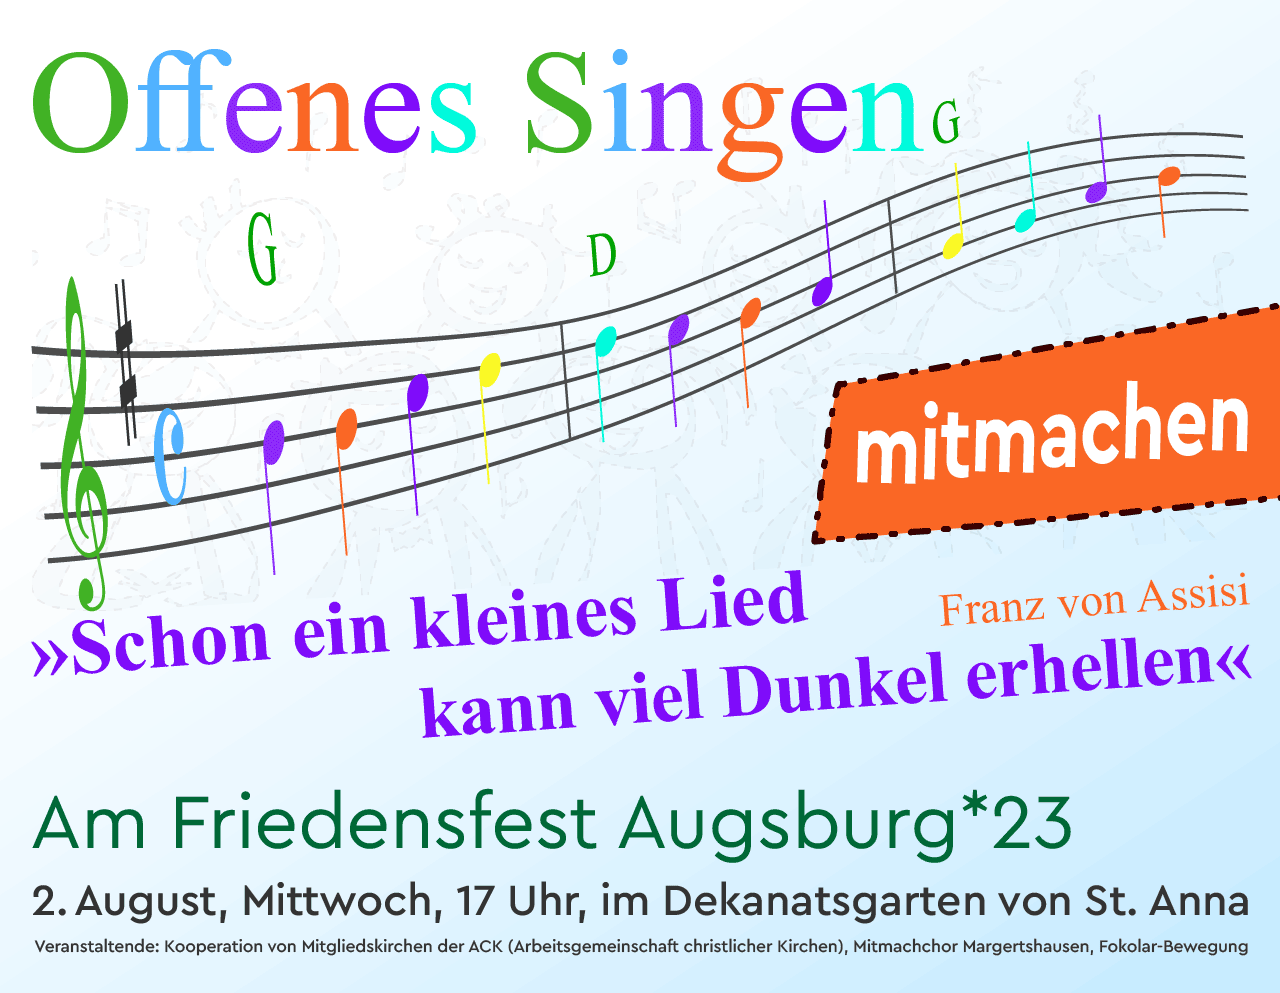 Offenes Singen am Friedensfest Augsburg 2023